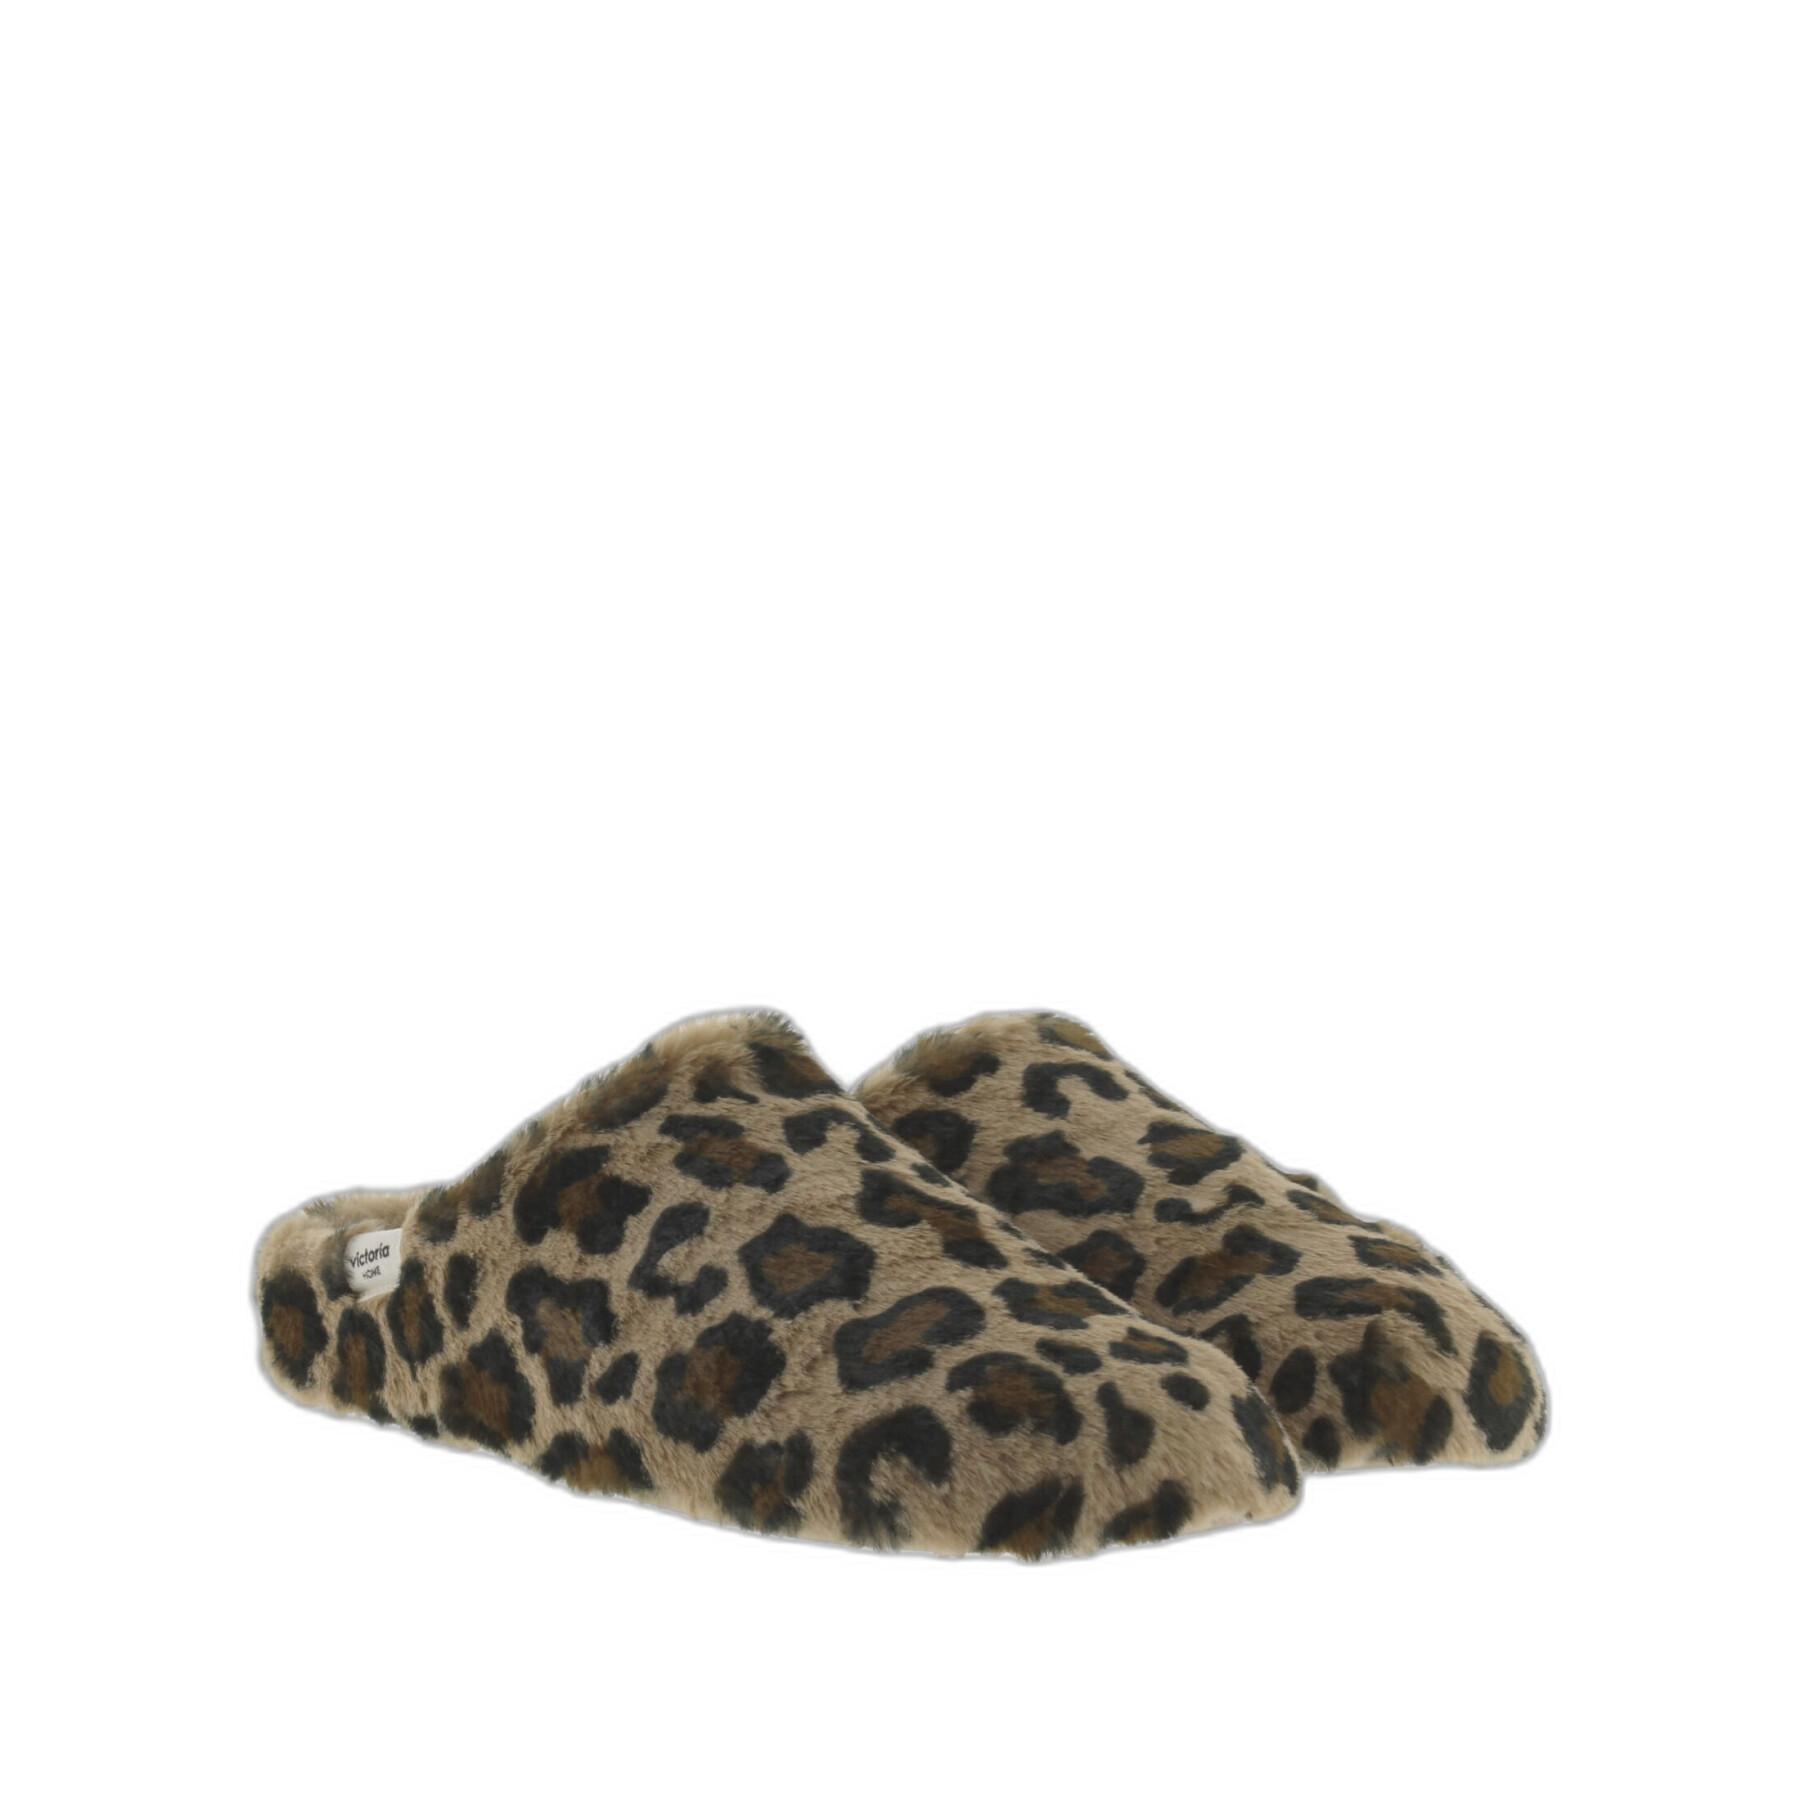 Chaussons à motif léopard femme Victoria Norte